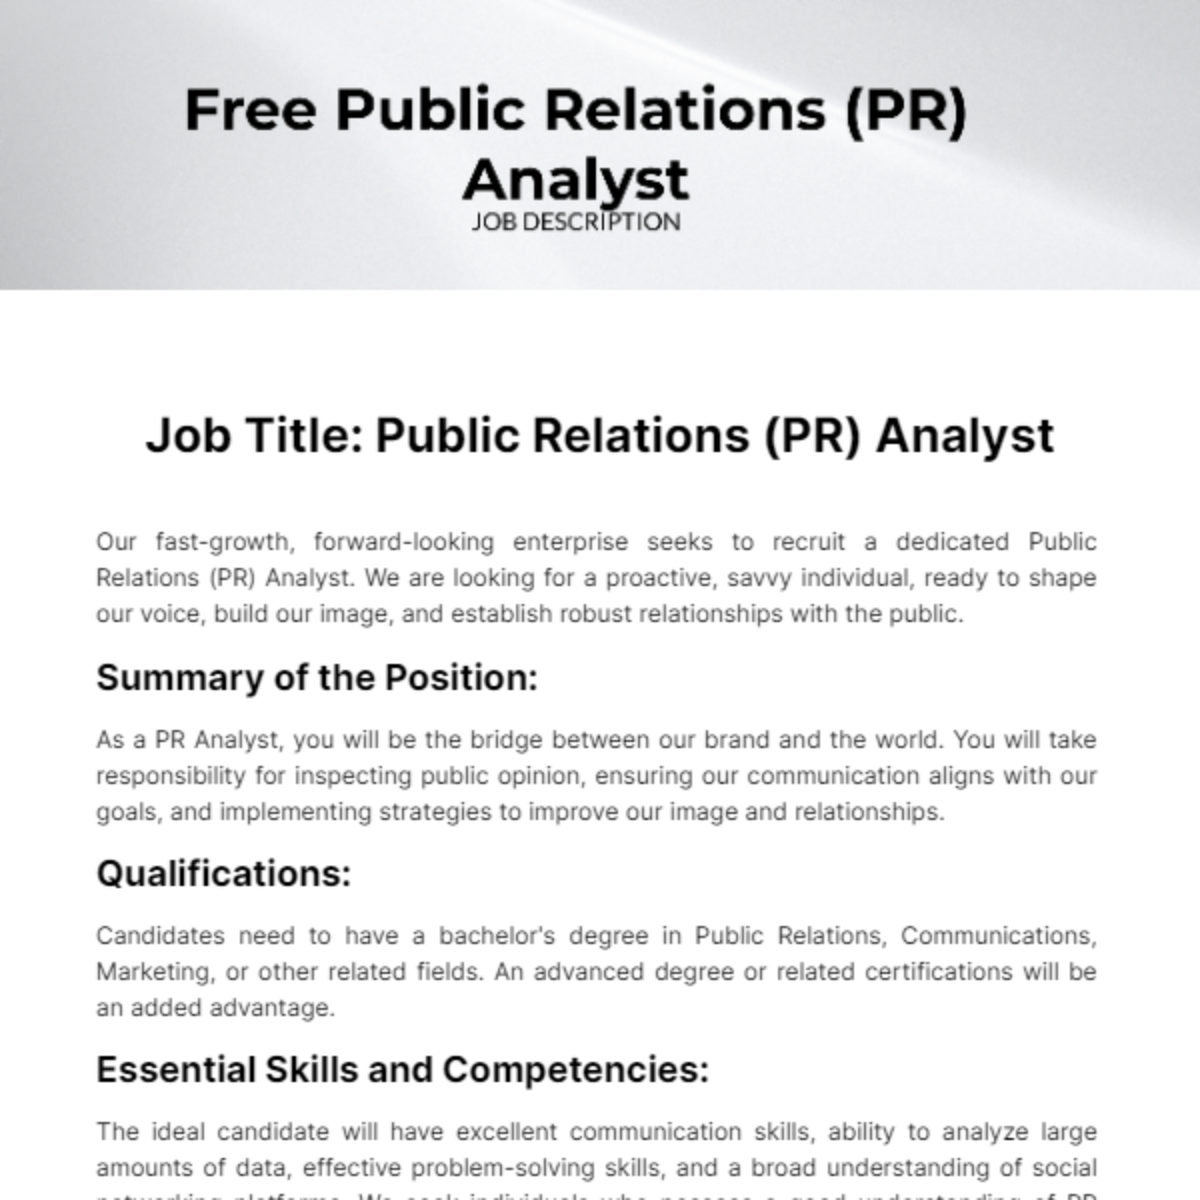 Public Relations (PR) Analyst Job Description Template